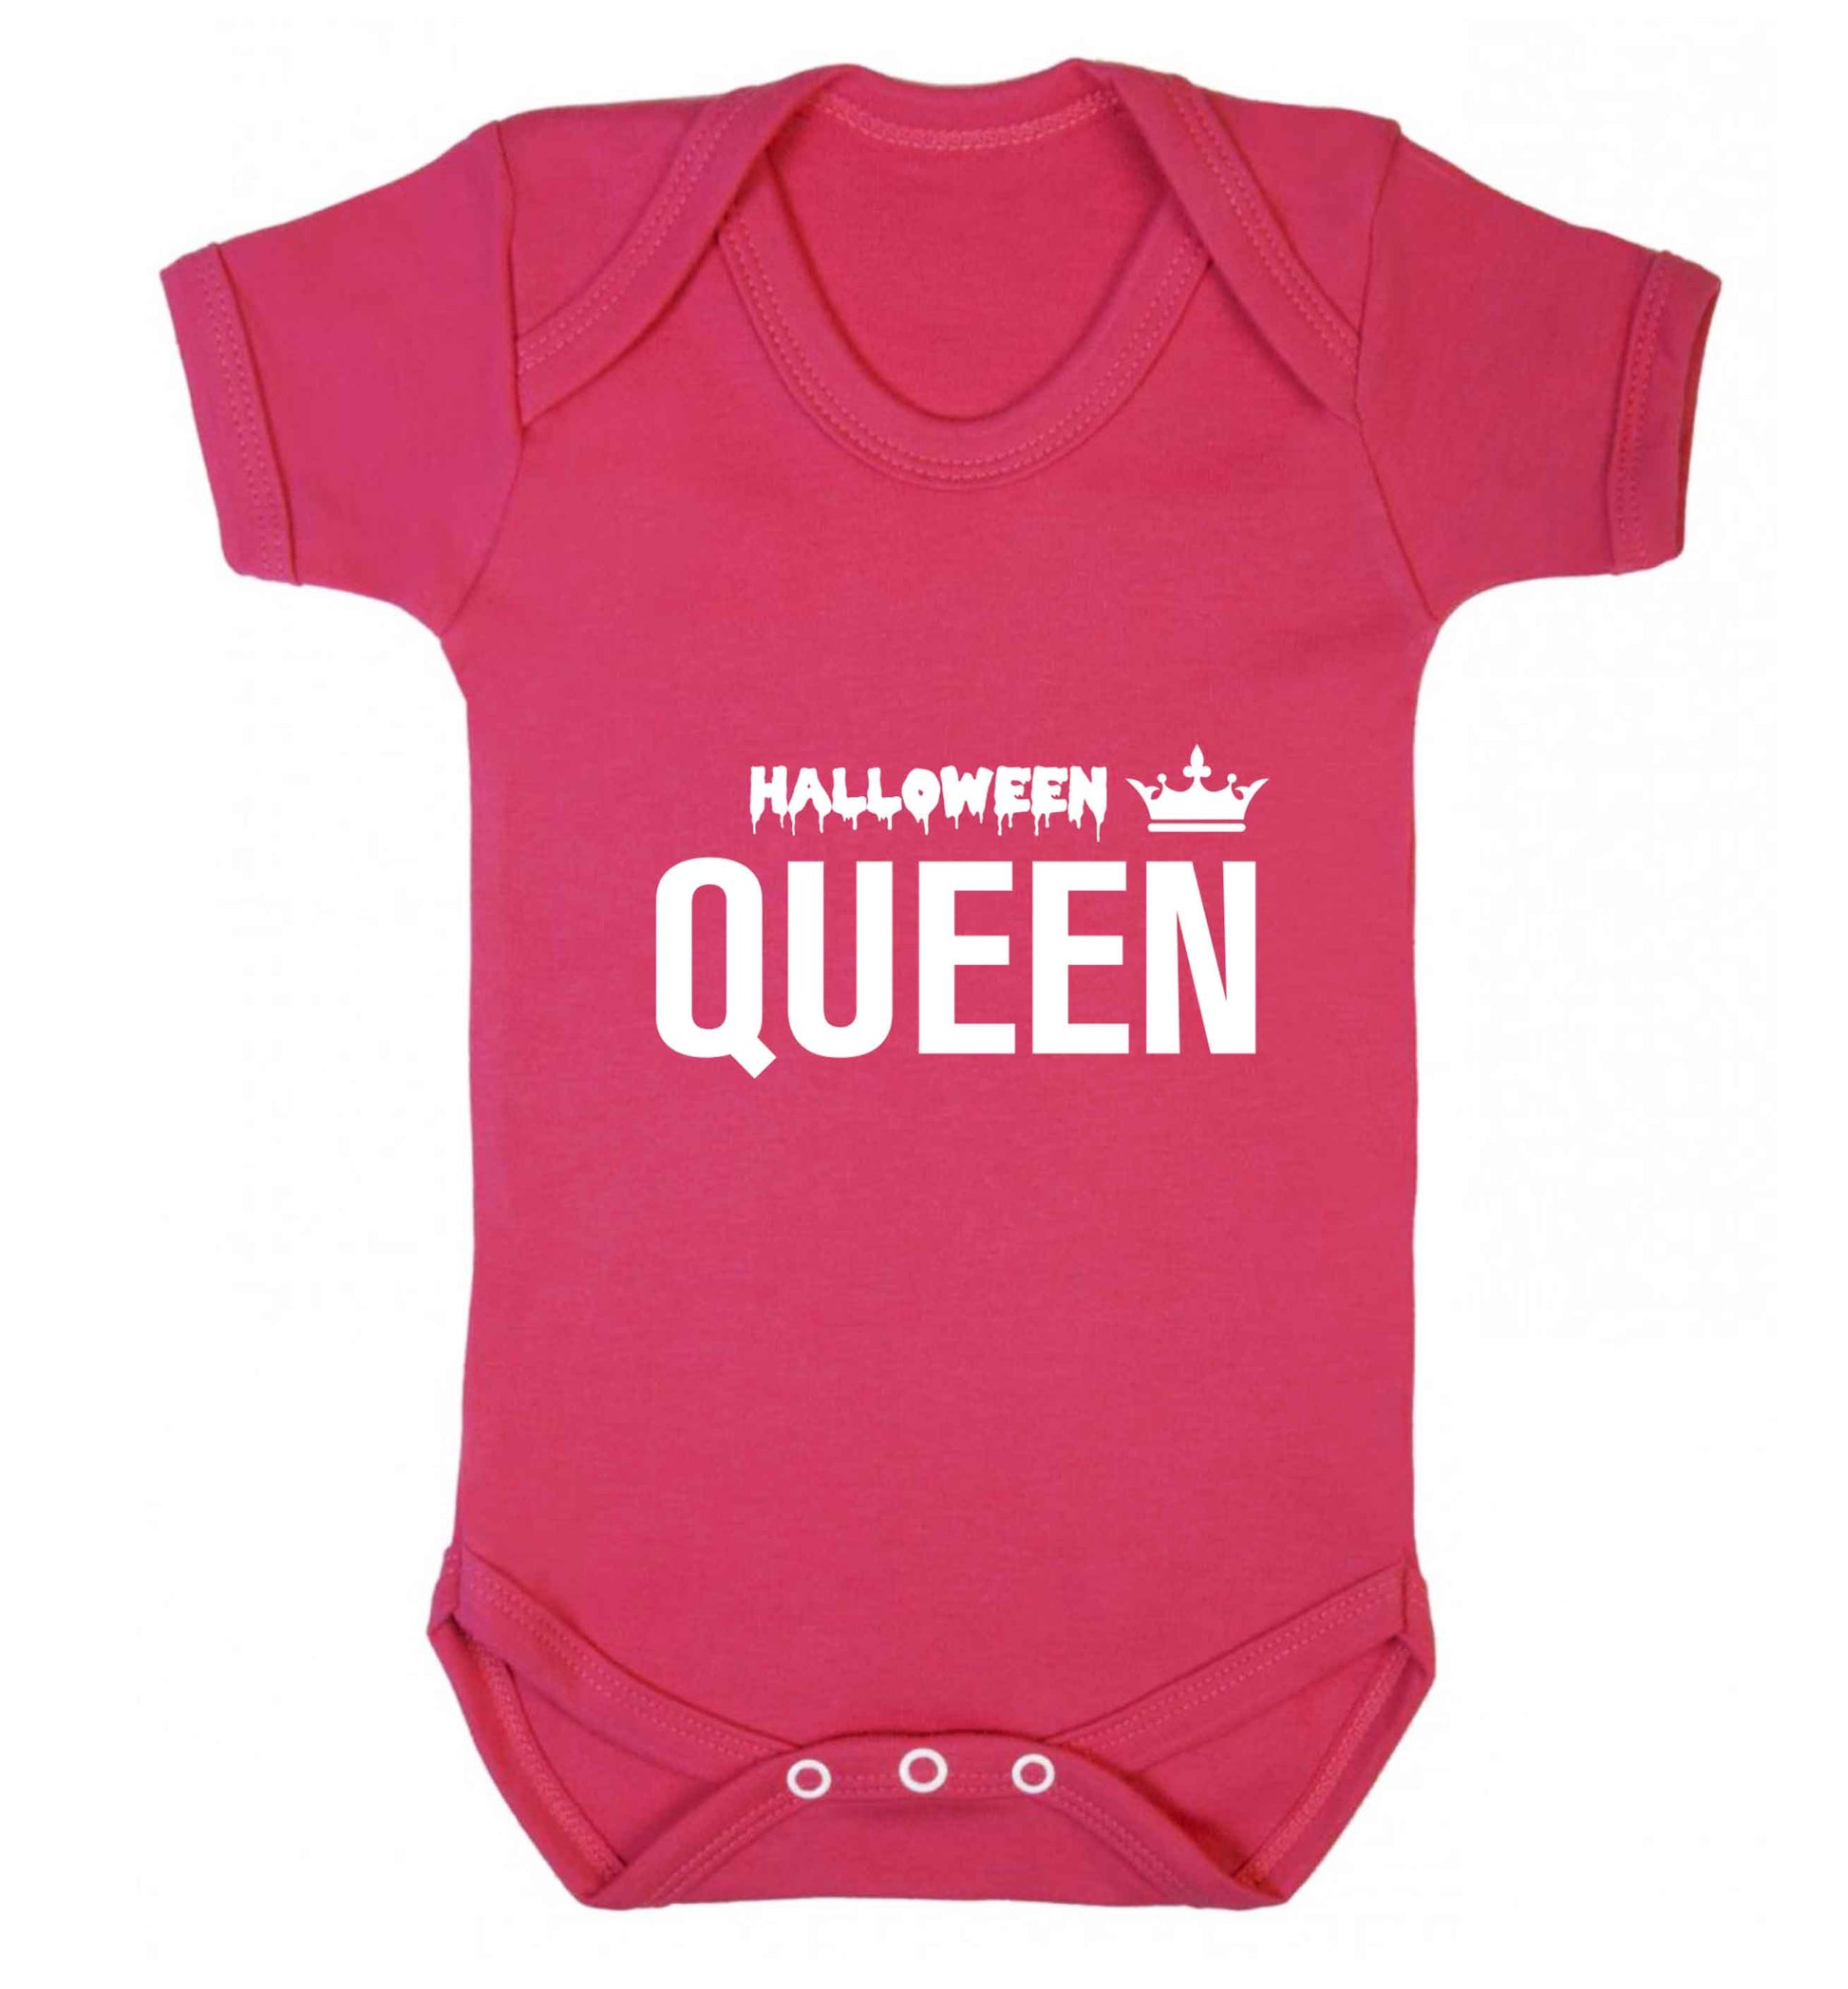 Halloween queen baby vest dark pink 18-24 months